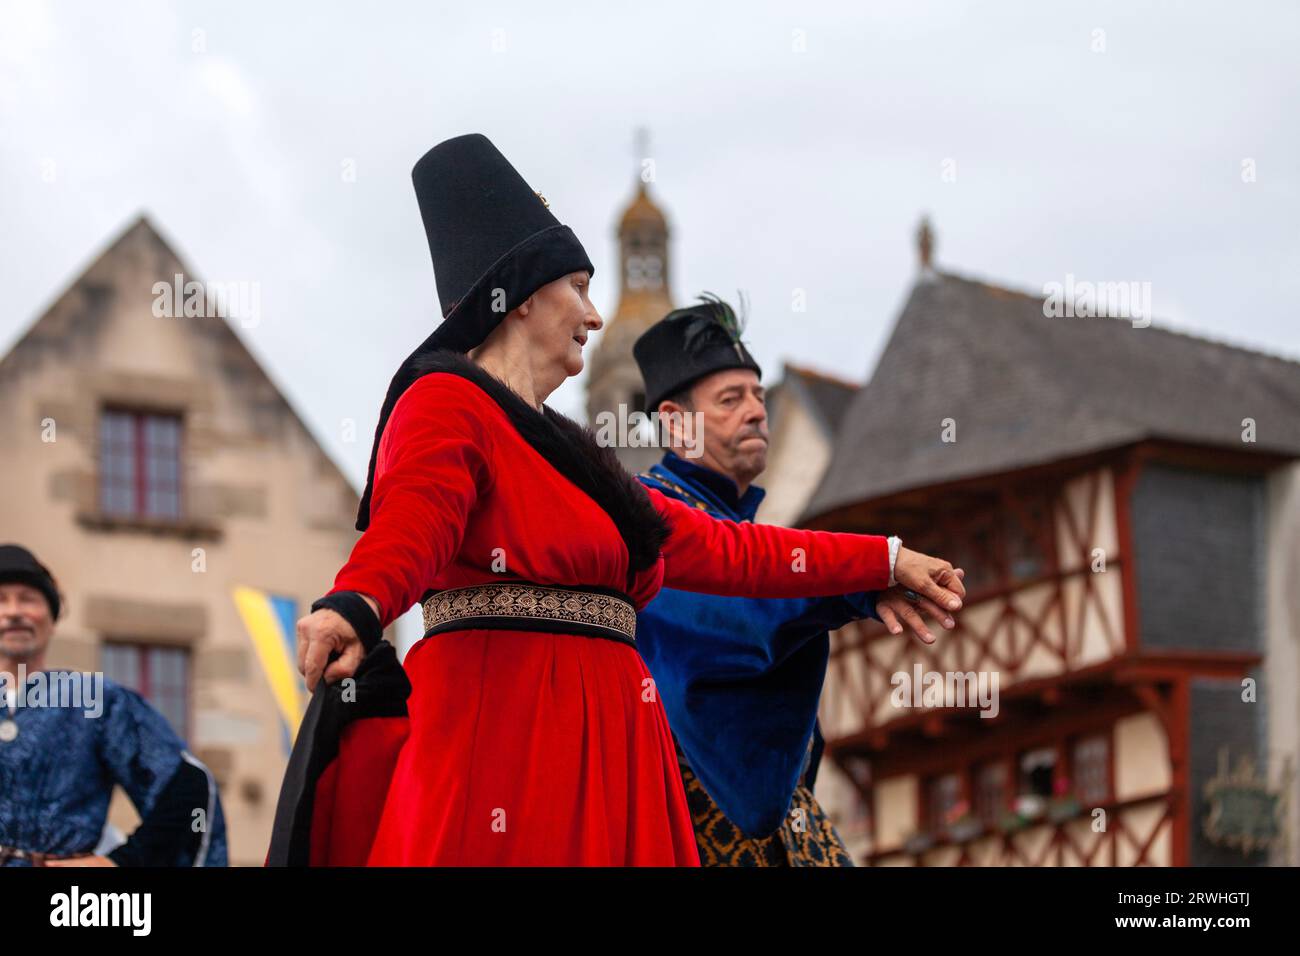 Saint Renan, Francia - 16 luglio 2023: Coppia che balla in abiti medievali su una piattaforma situata sulla vecchia piazza del mercato durante il San Renano medievale Foto Stock